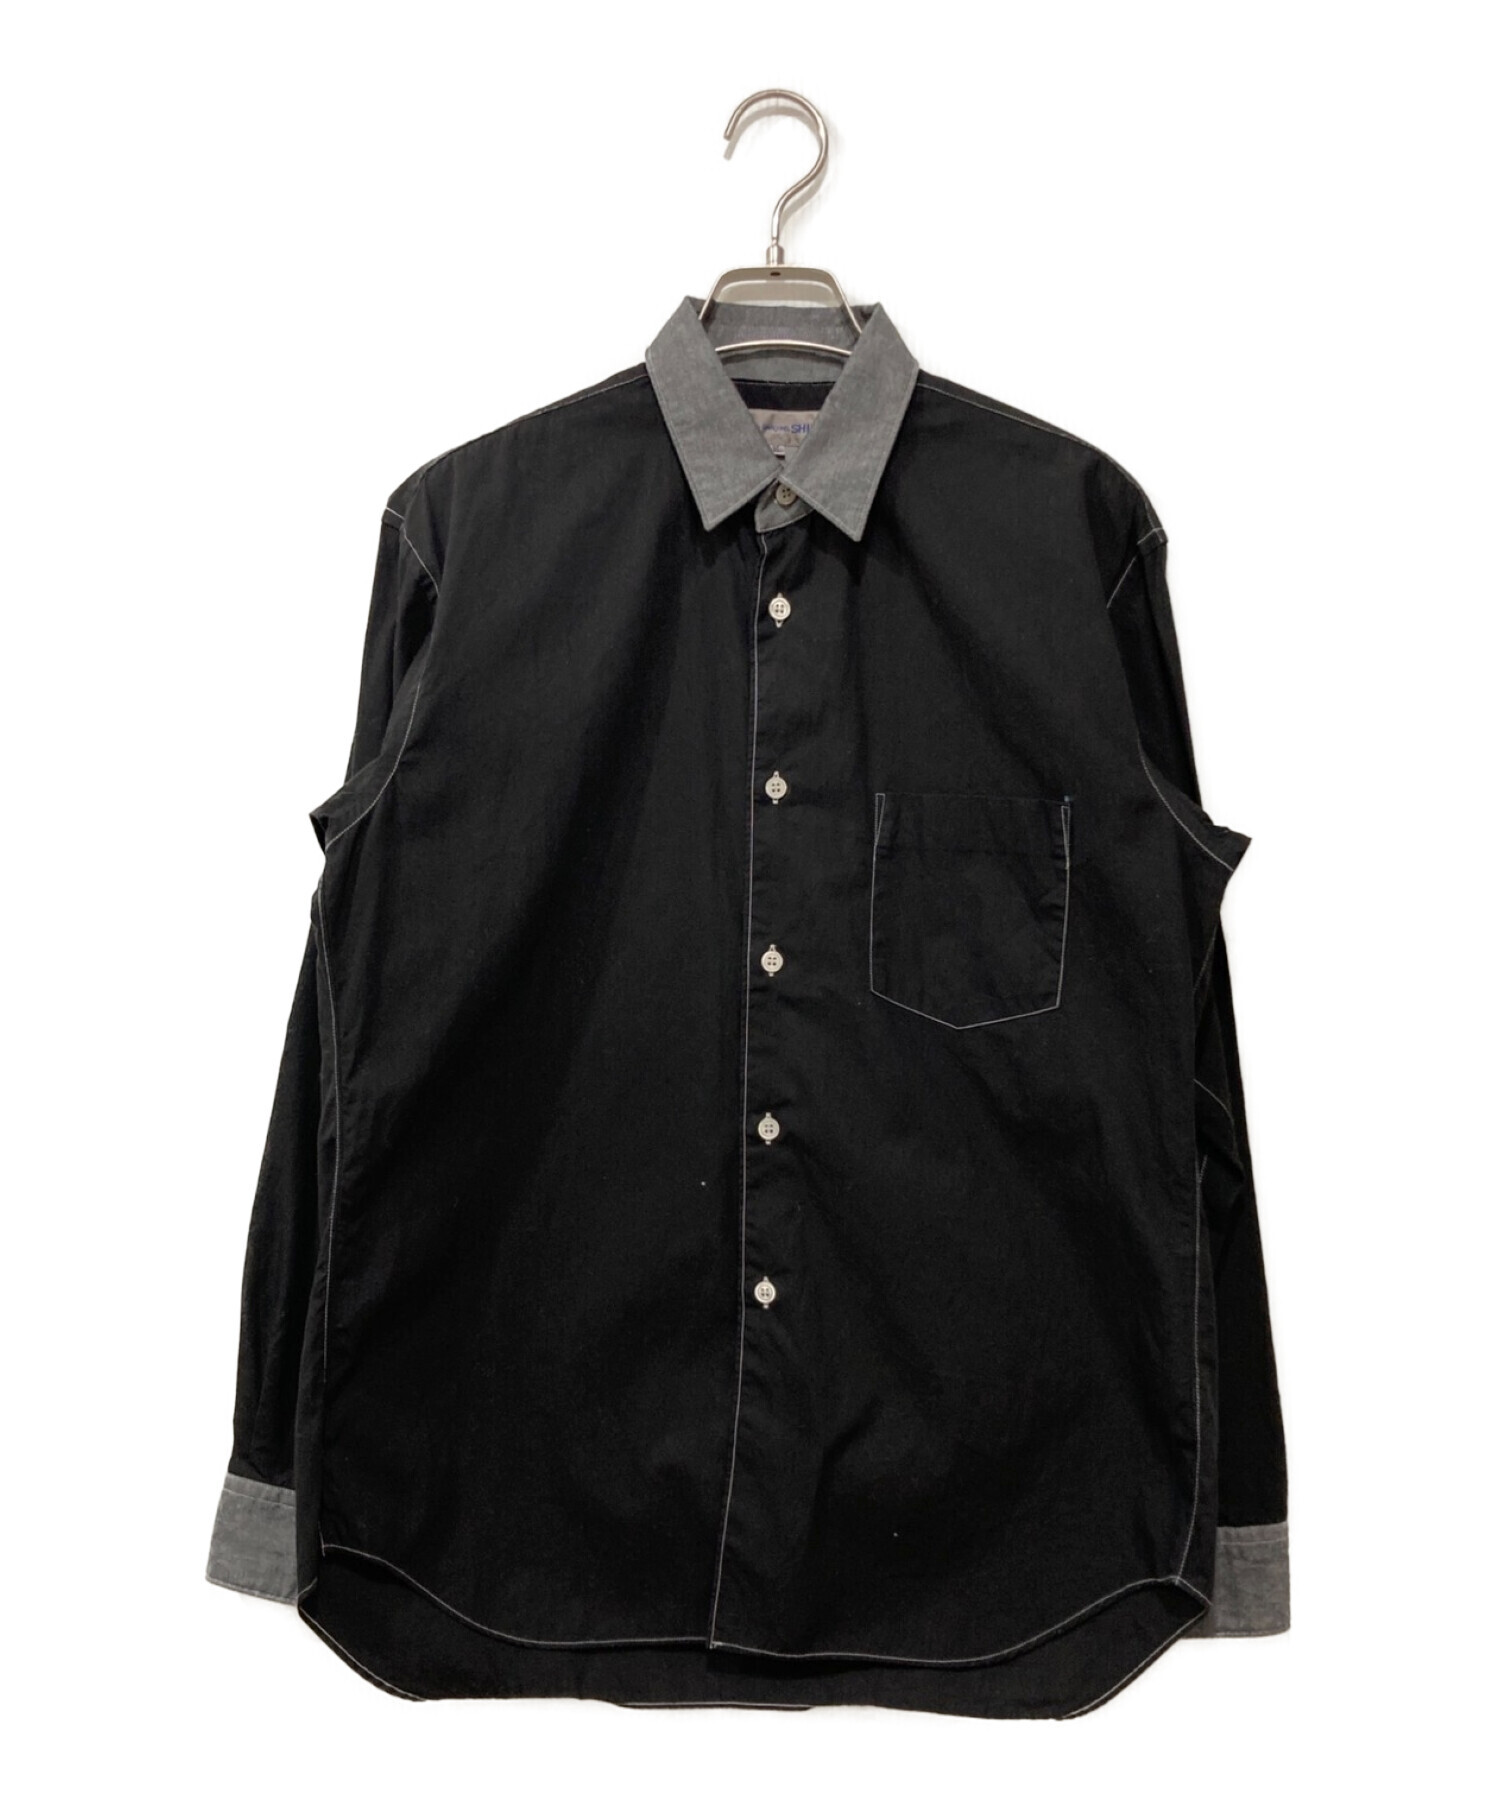 15000円可能ですCOMME des GARCONS SHIRT コムデギャルソンシャツ ブラック